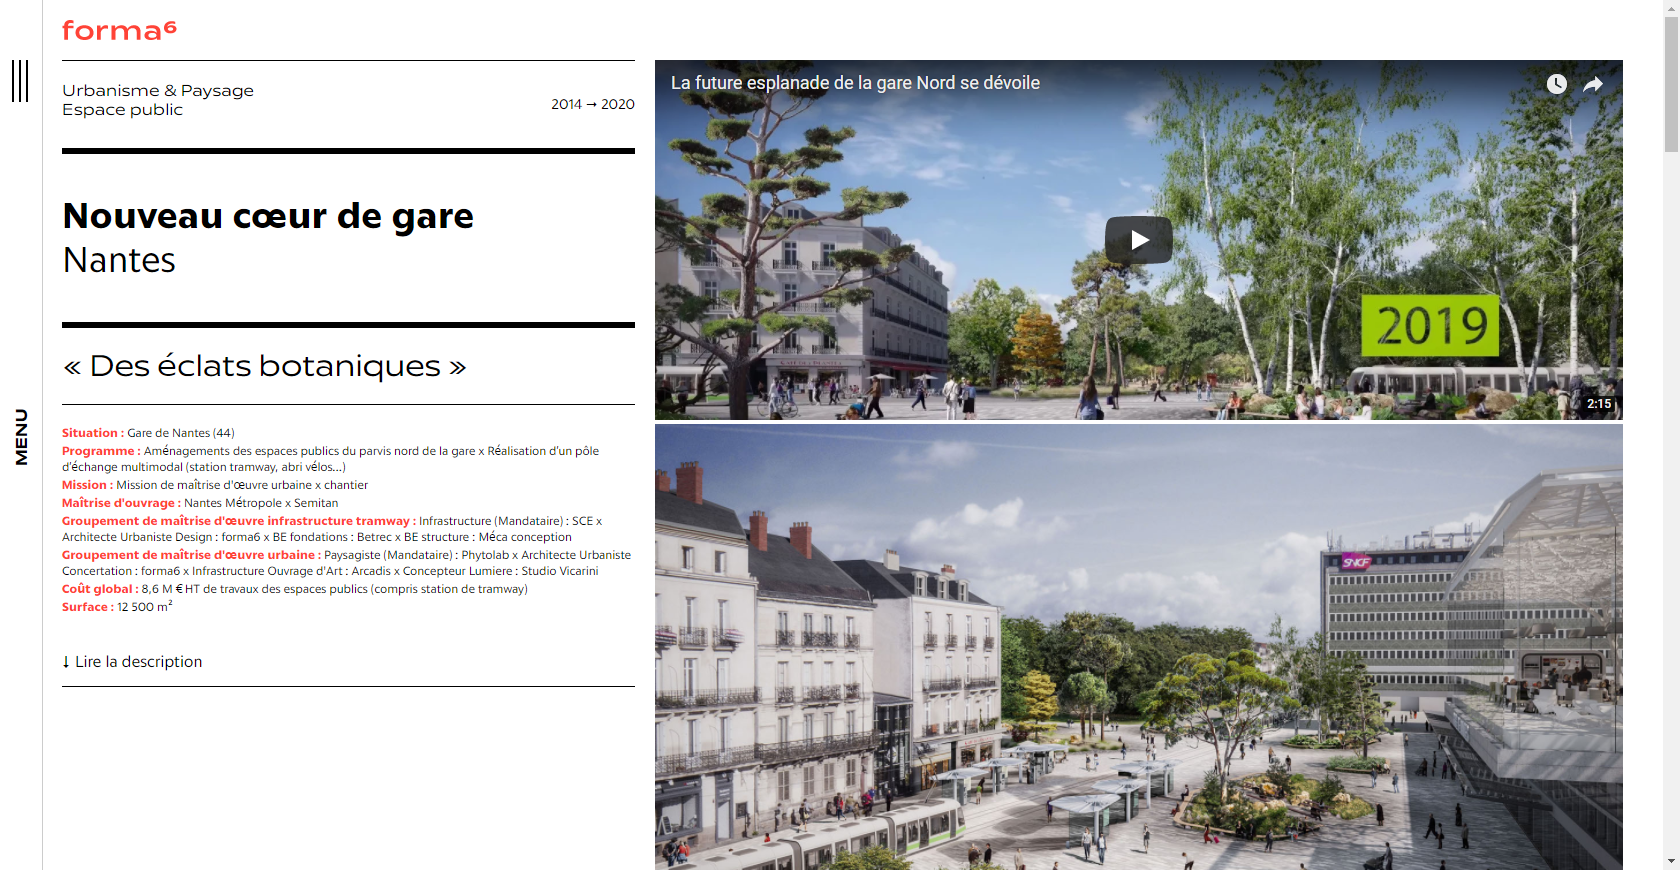 Extrait d'une page web du site de Forma 6 consacrée à un projet d'architecture Nantais